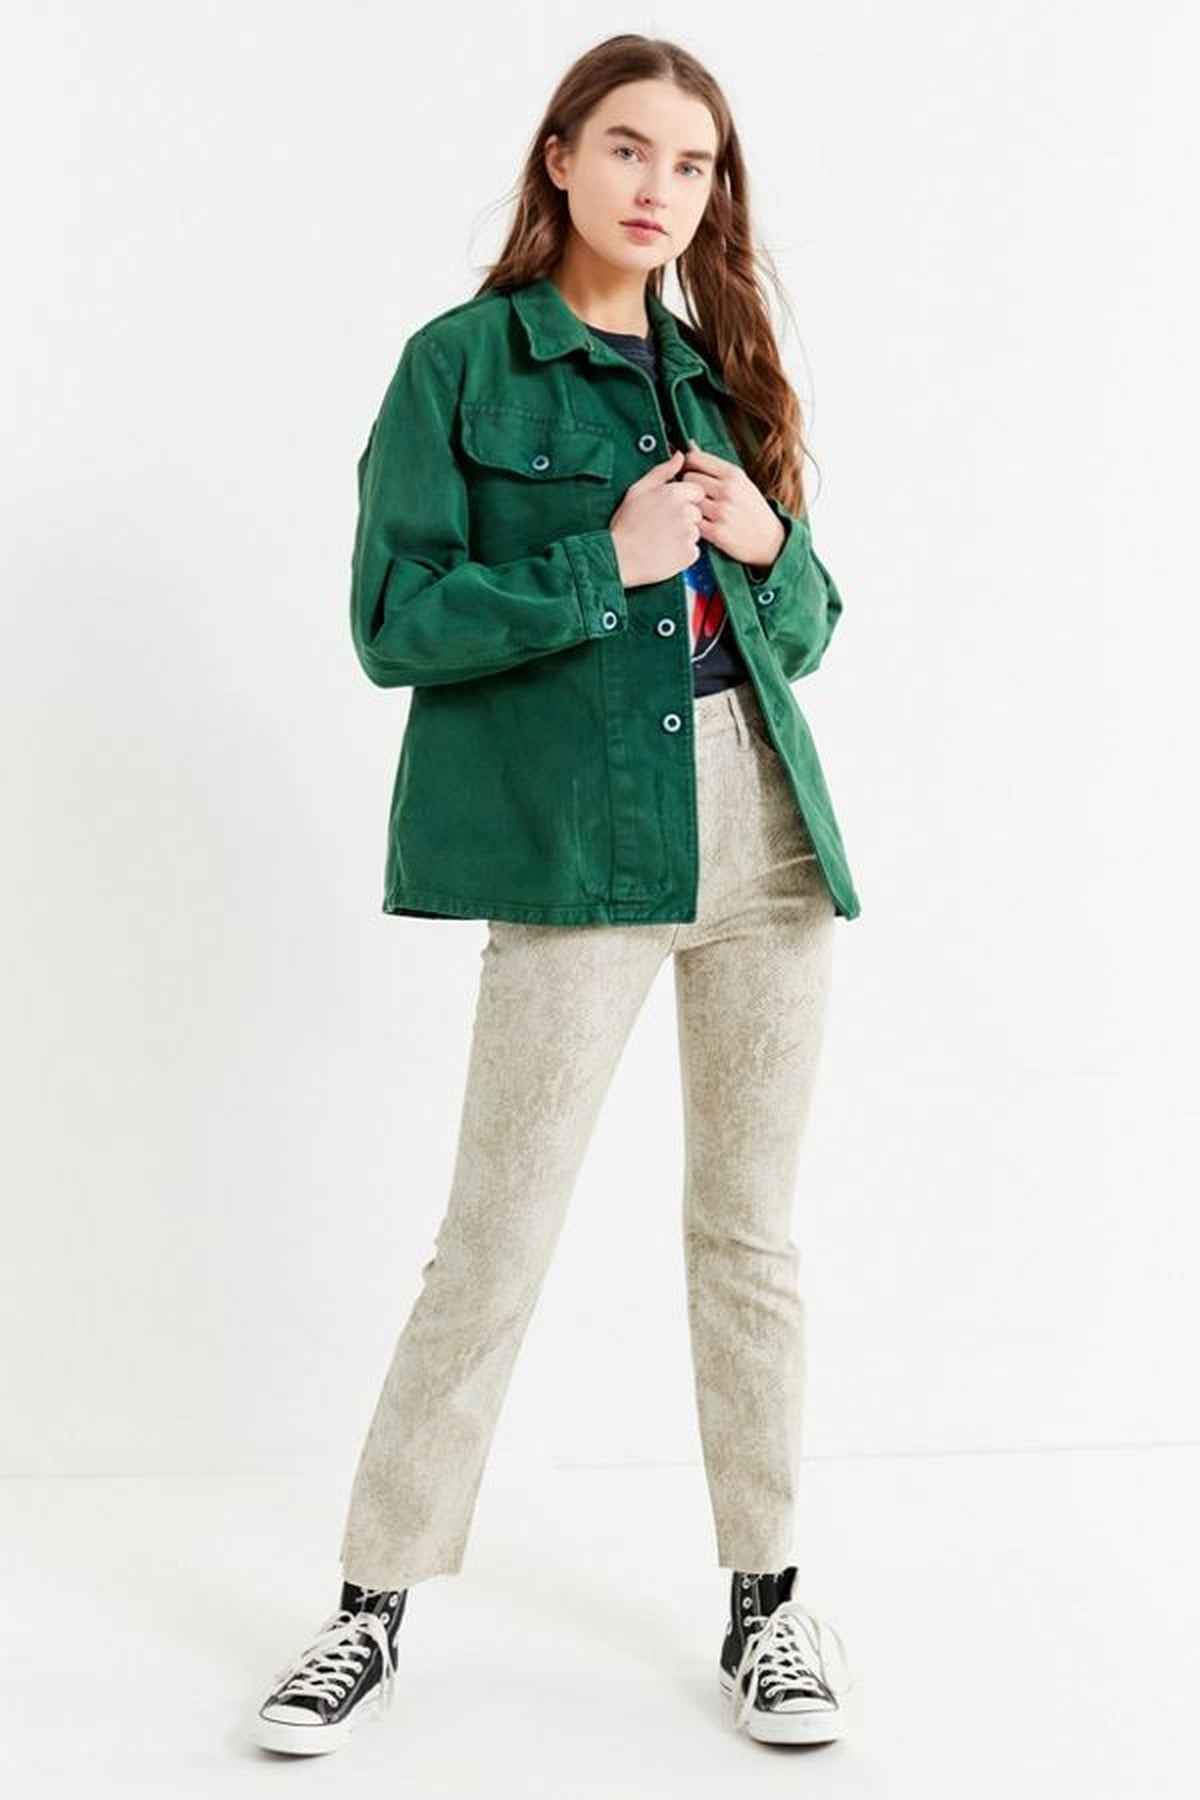 Stylish Outfit Ideas For a Denim Jacket | POPSUGAR Fashion